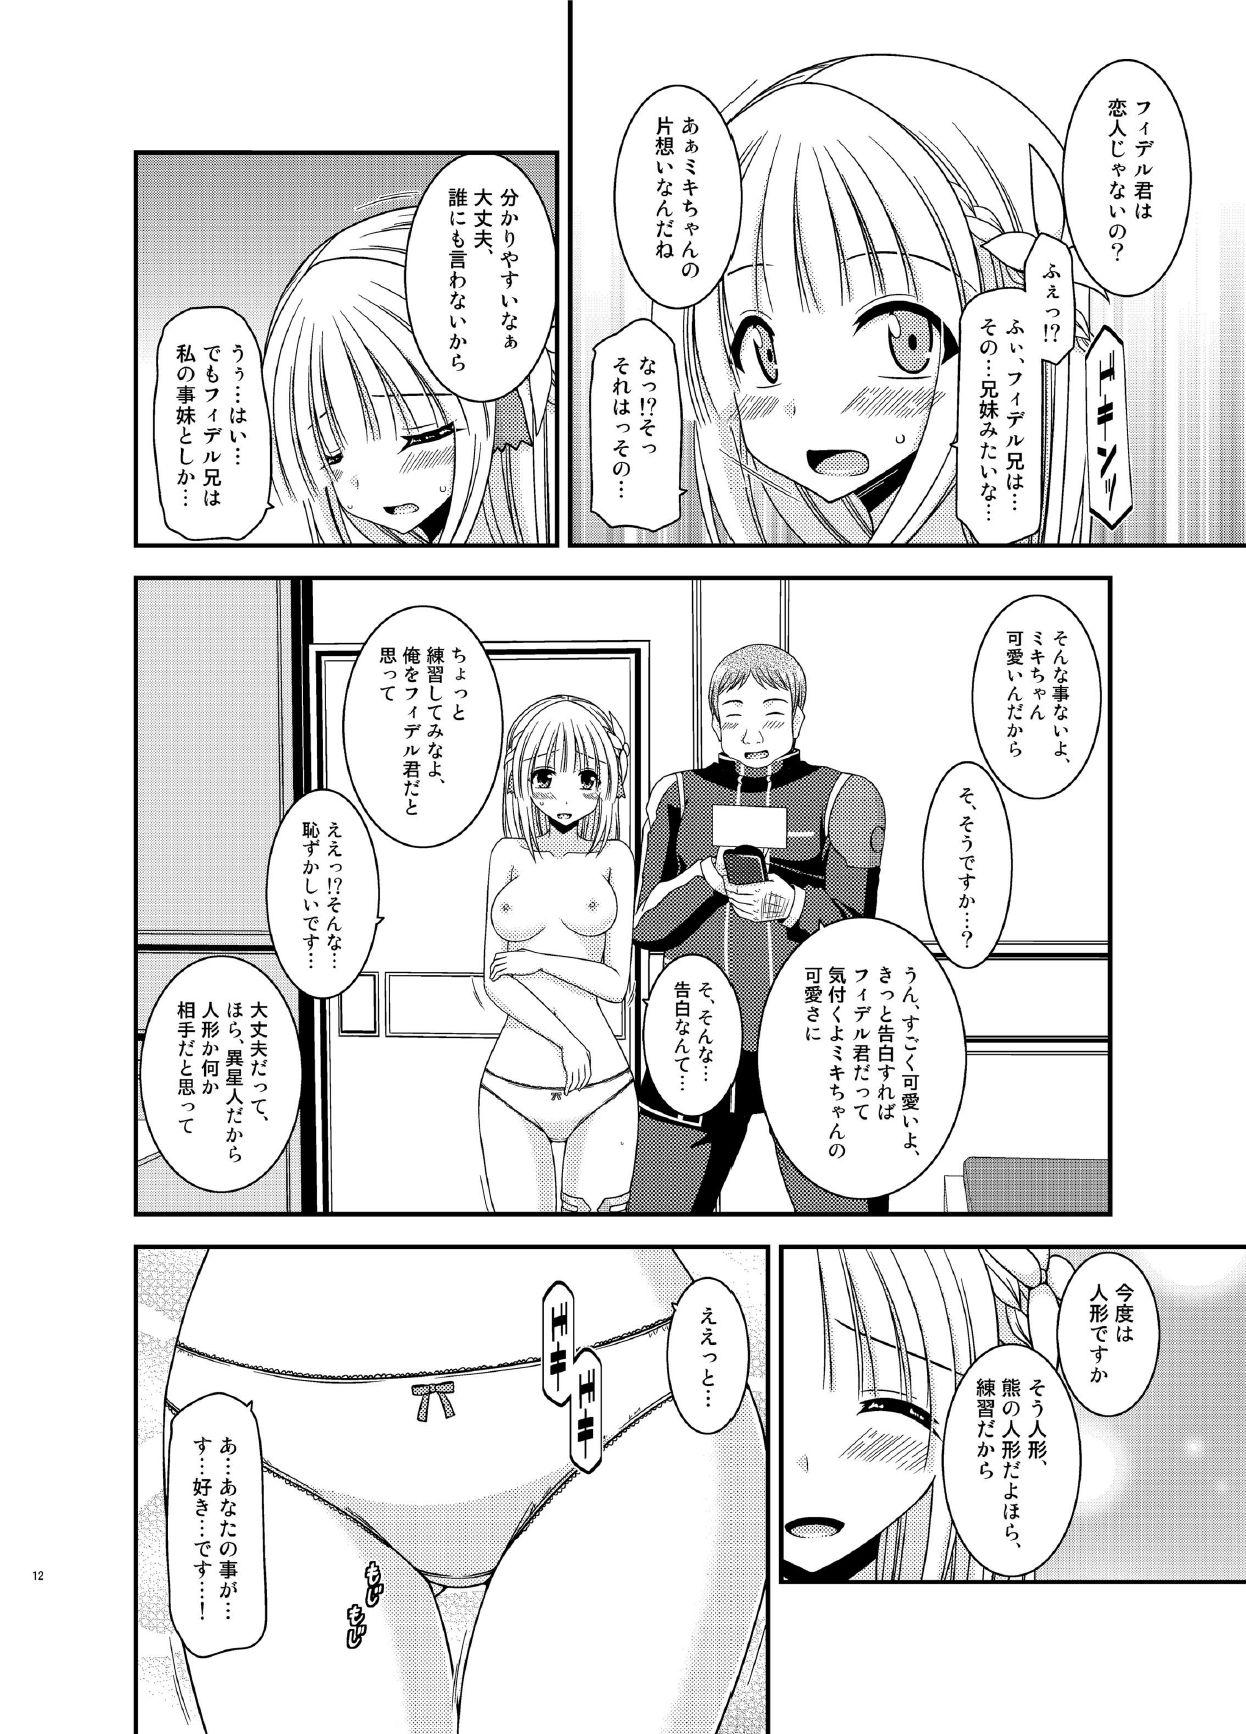 Boobies Iseijin to no Sex wa No Count dakara... - Star ocean Tetona - Page 12